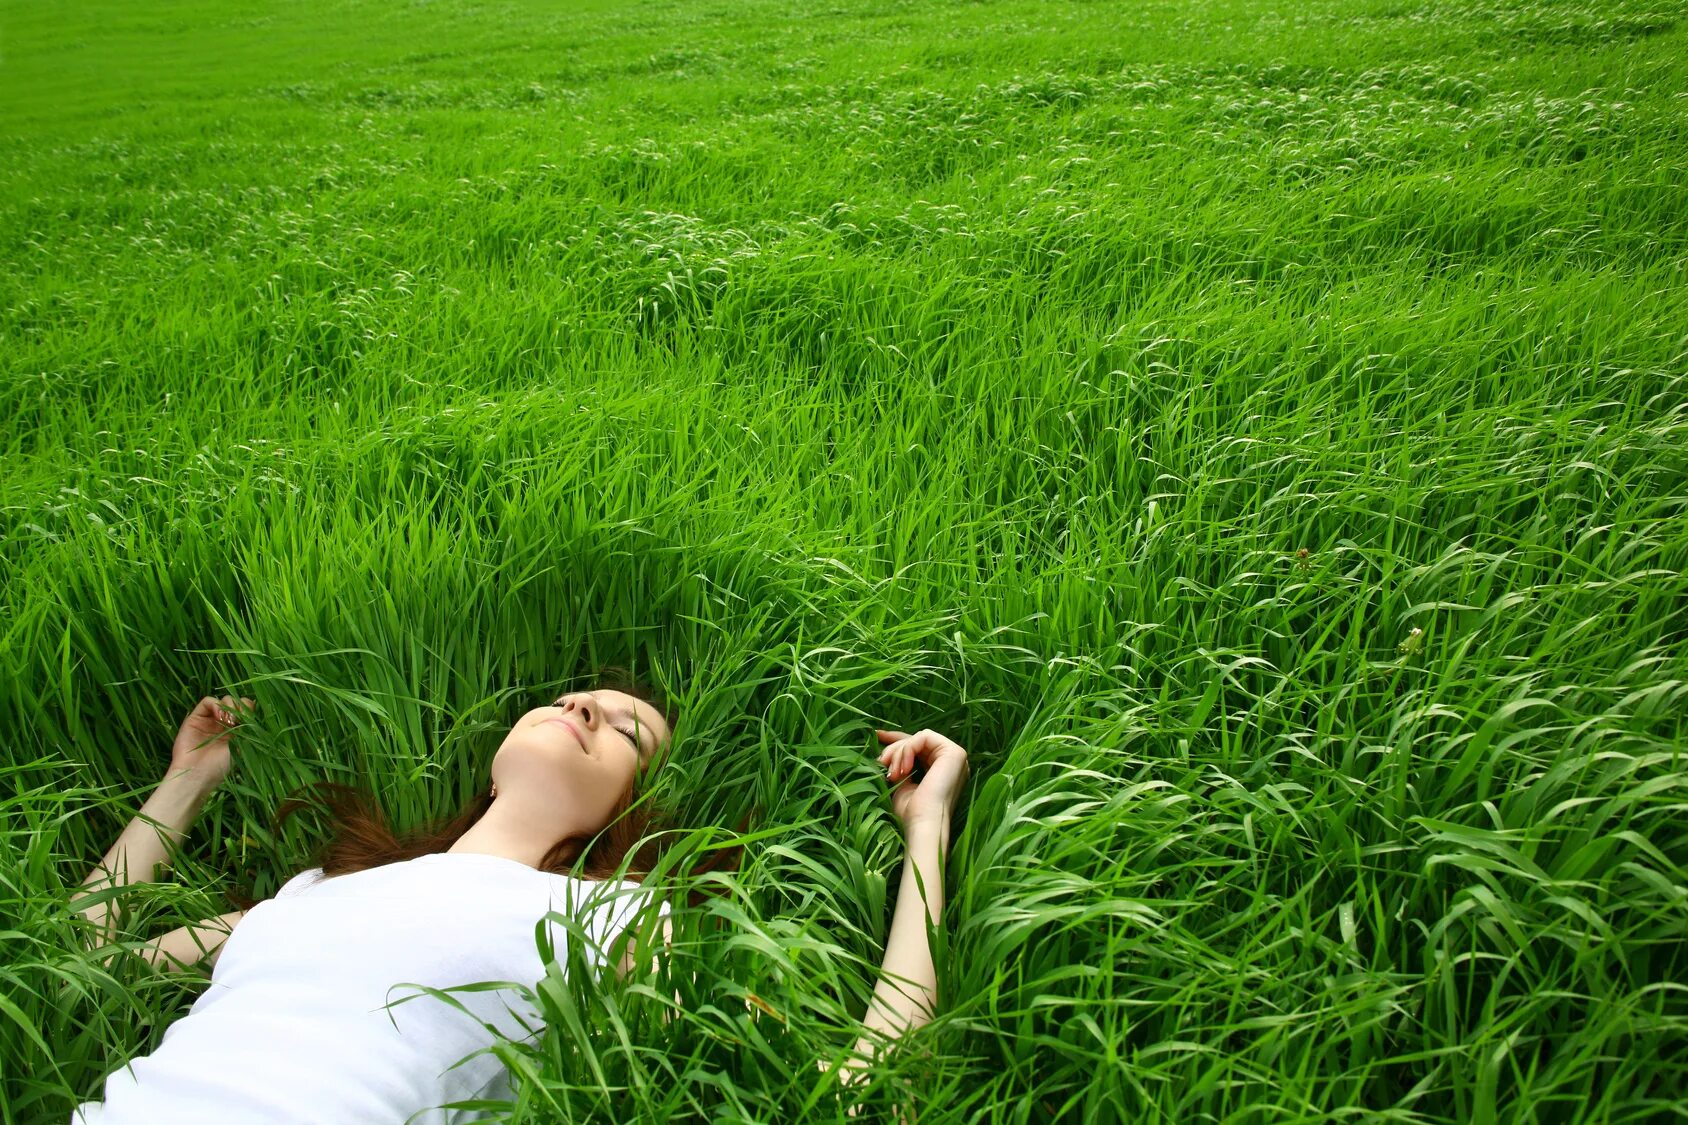 Мир релакса. Девушка в траве. Лежит на траве. Человек лежит на траве. Расслабление на природе.